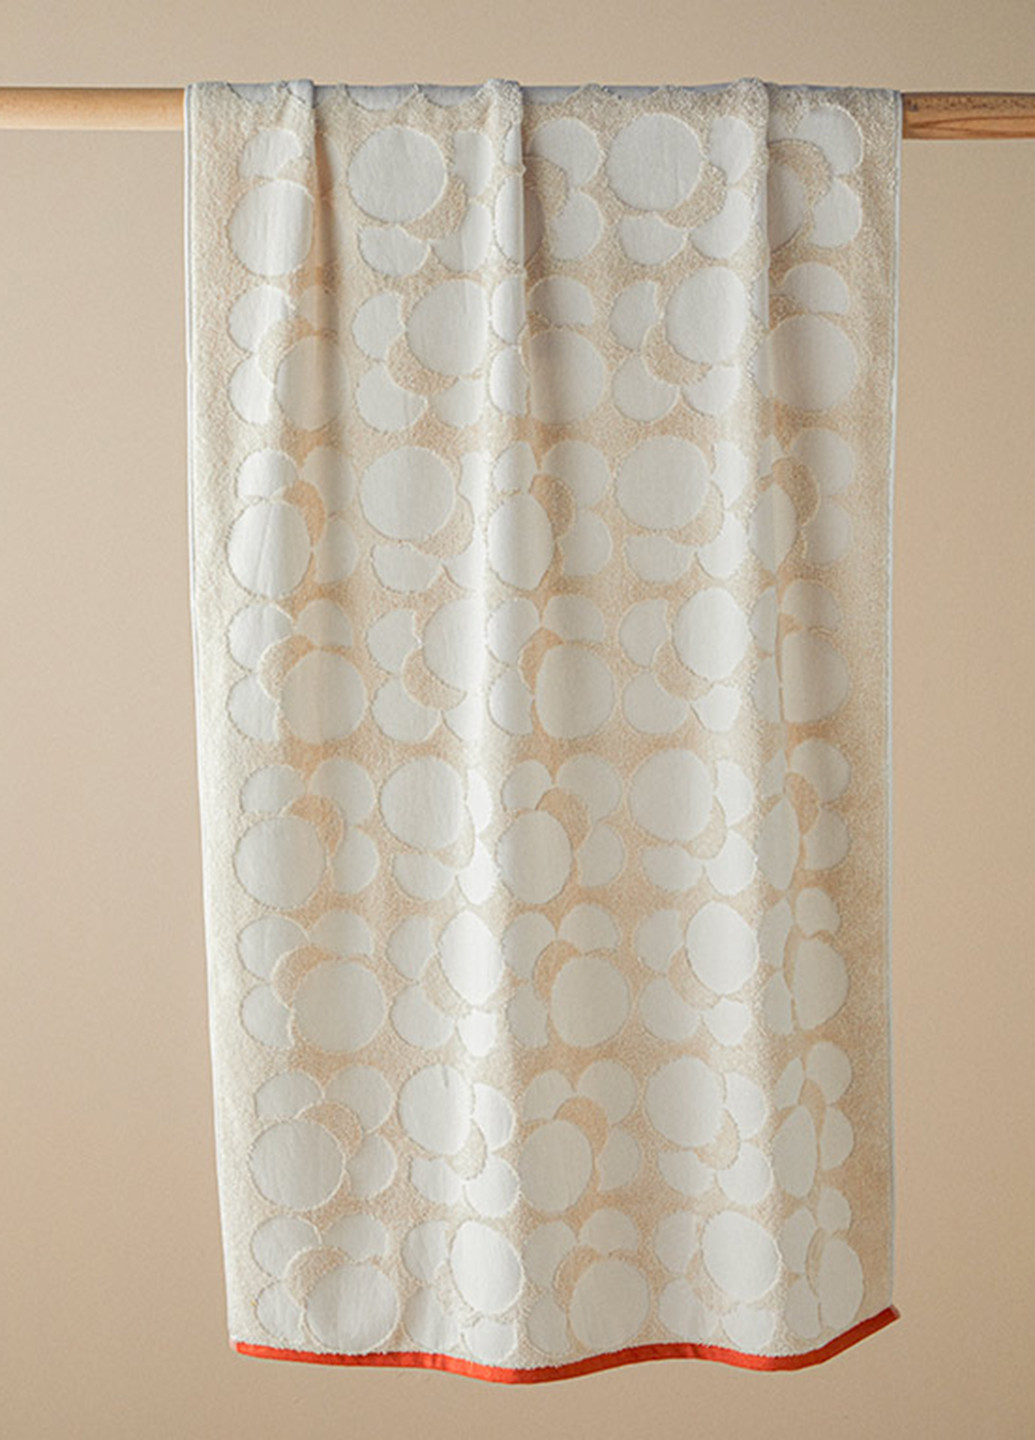 English Home полотенце, 70х140 см рисунок бежевый производство - Турция